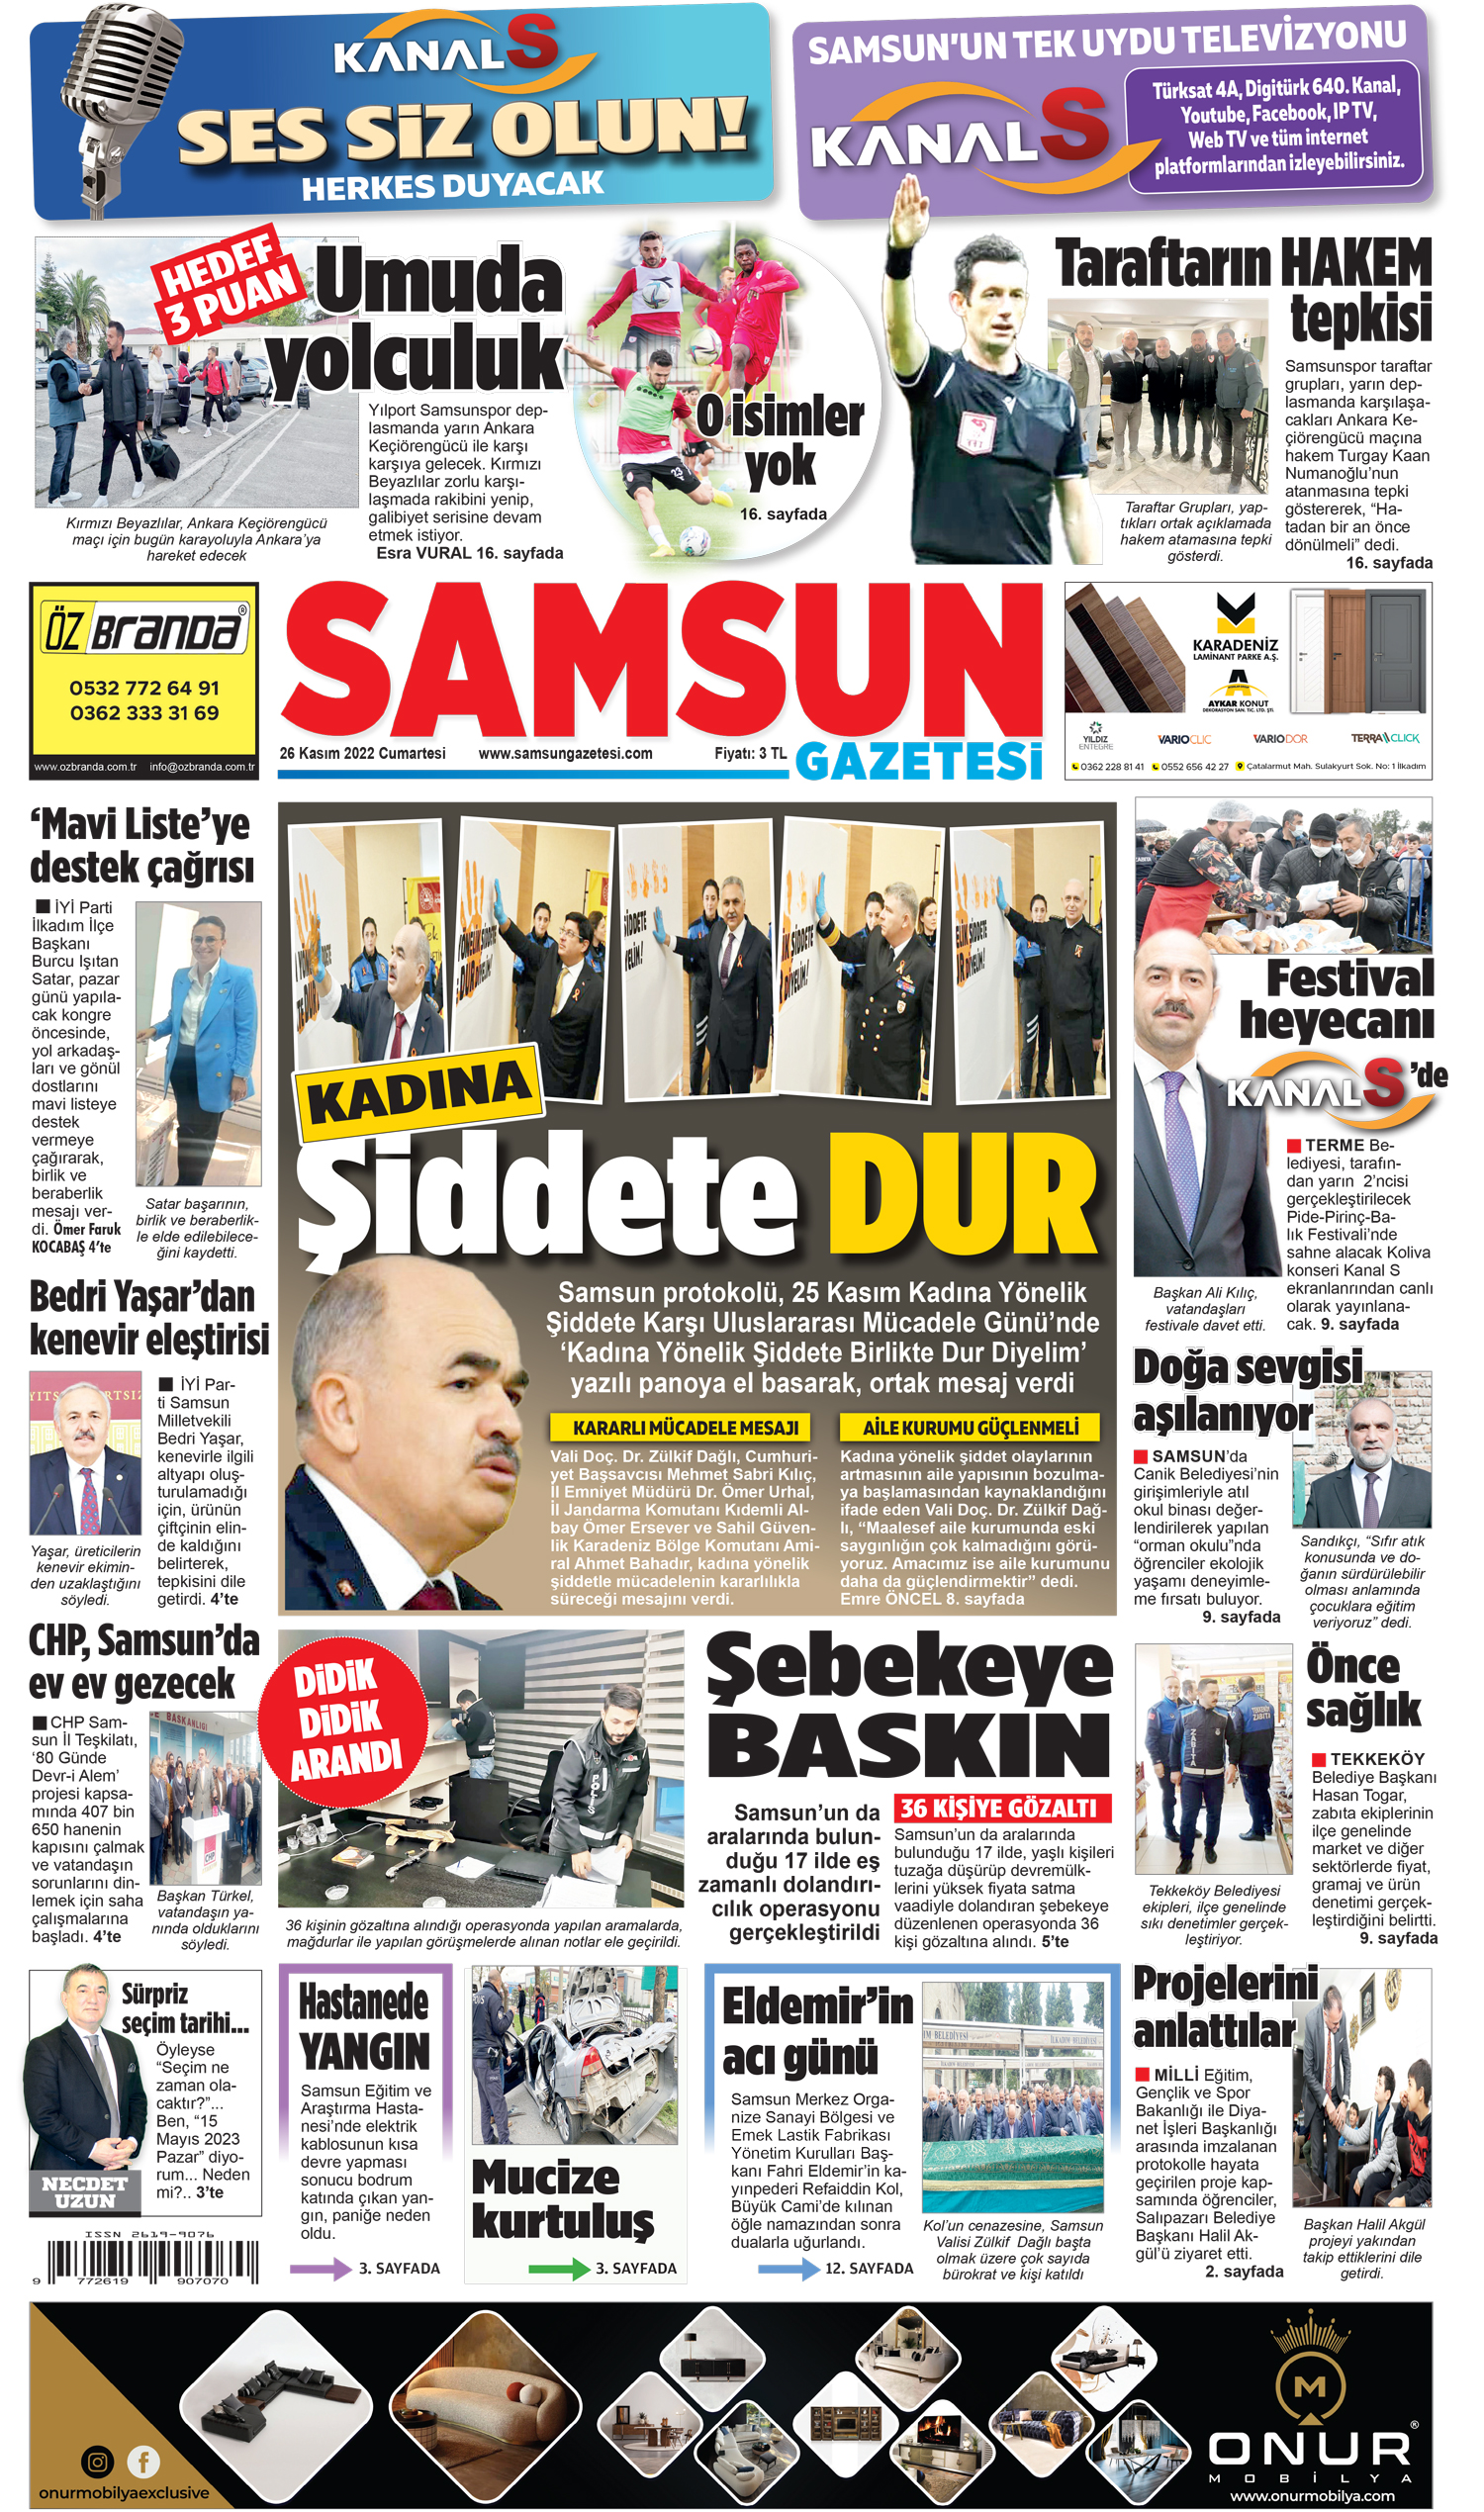 26 Kasım Cumartesi Samsun Gazetesi